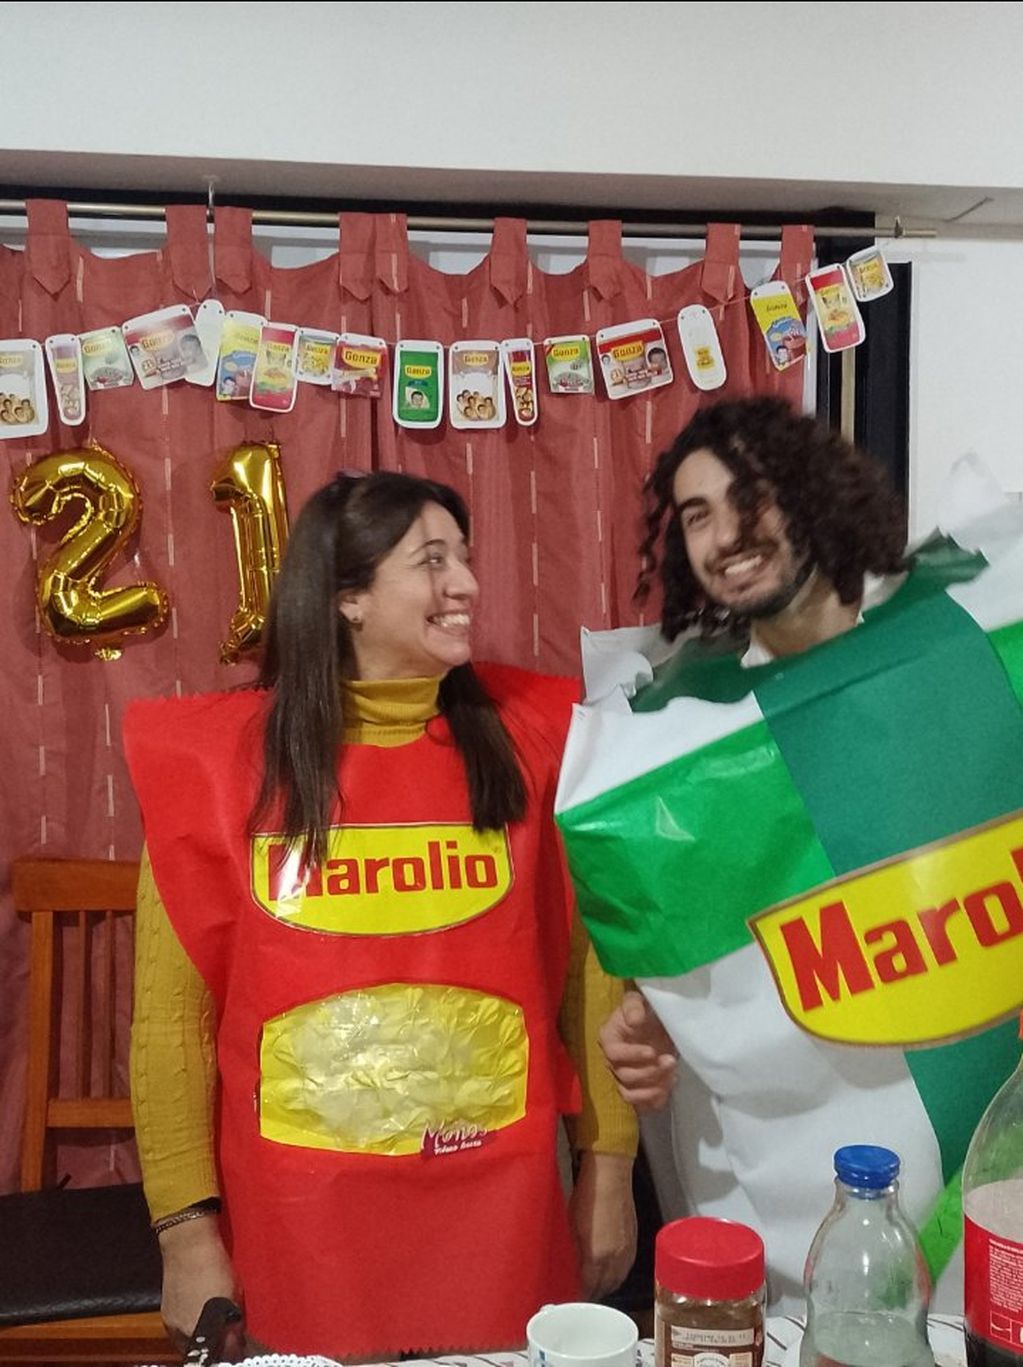 Los mejores disfraces del cumpleaños con temática de Marolio